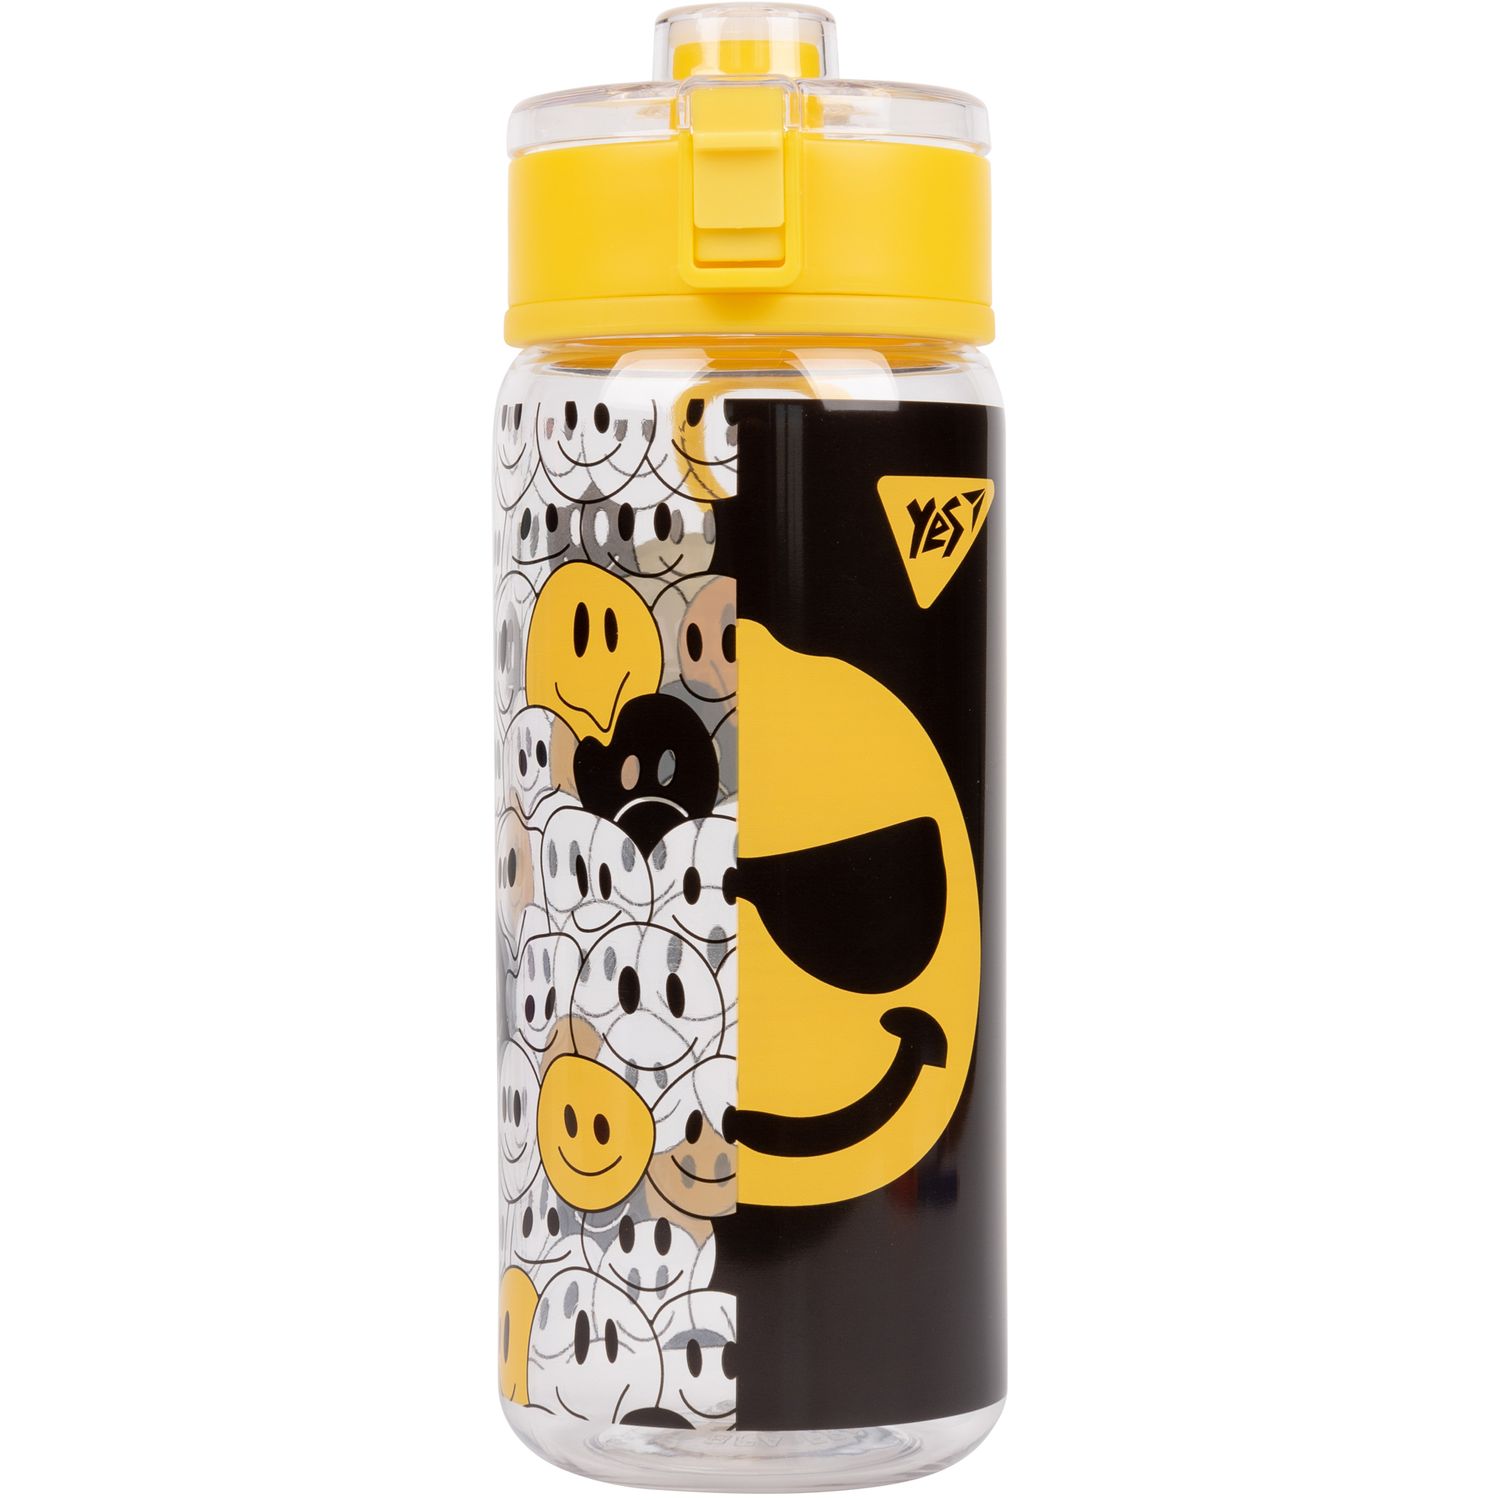 Пляшка для води Yes Melt Smile, 600 мл, жовта з чорним (707955) - фото 1